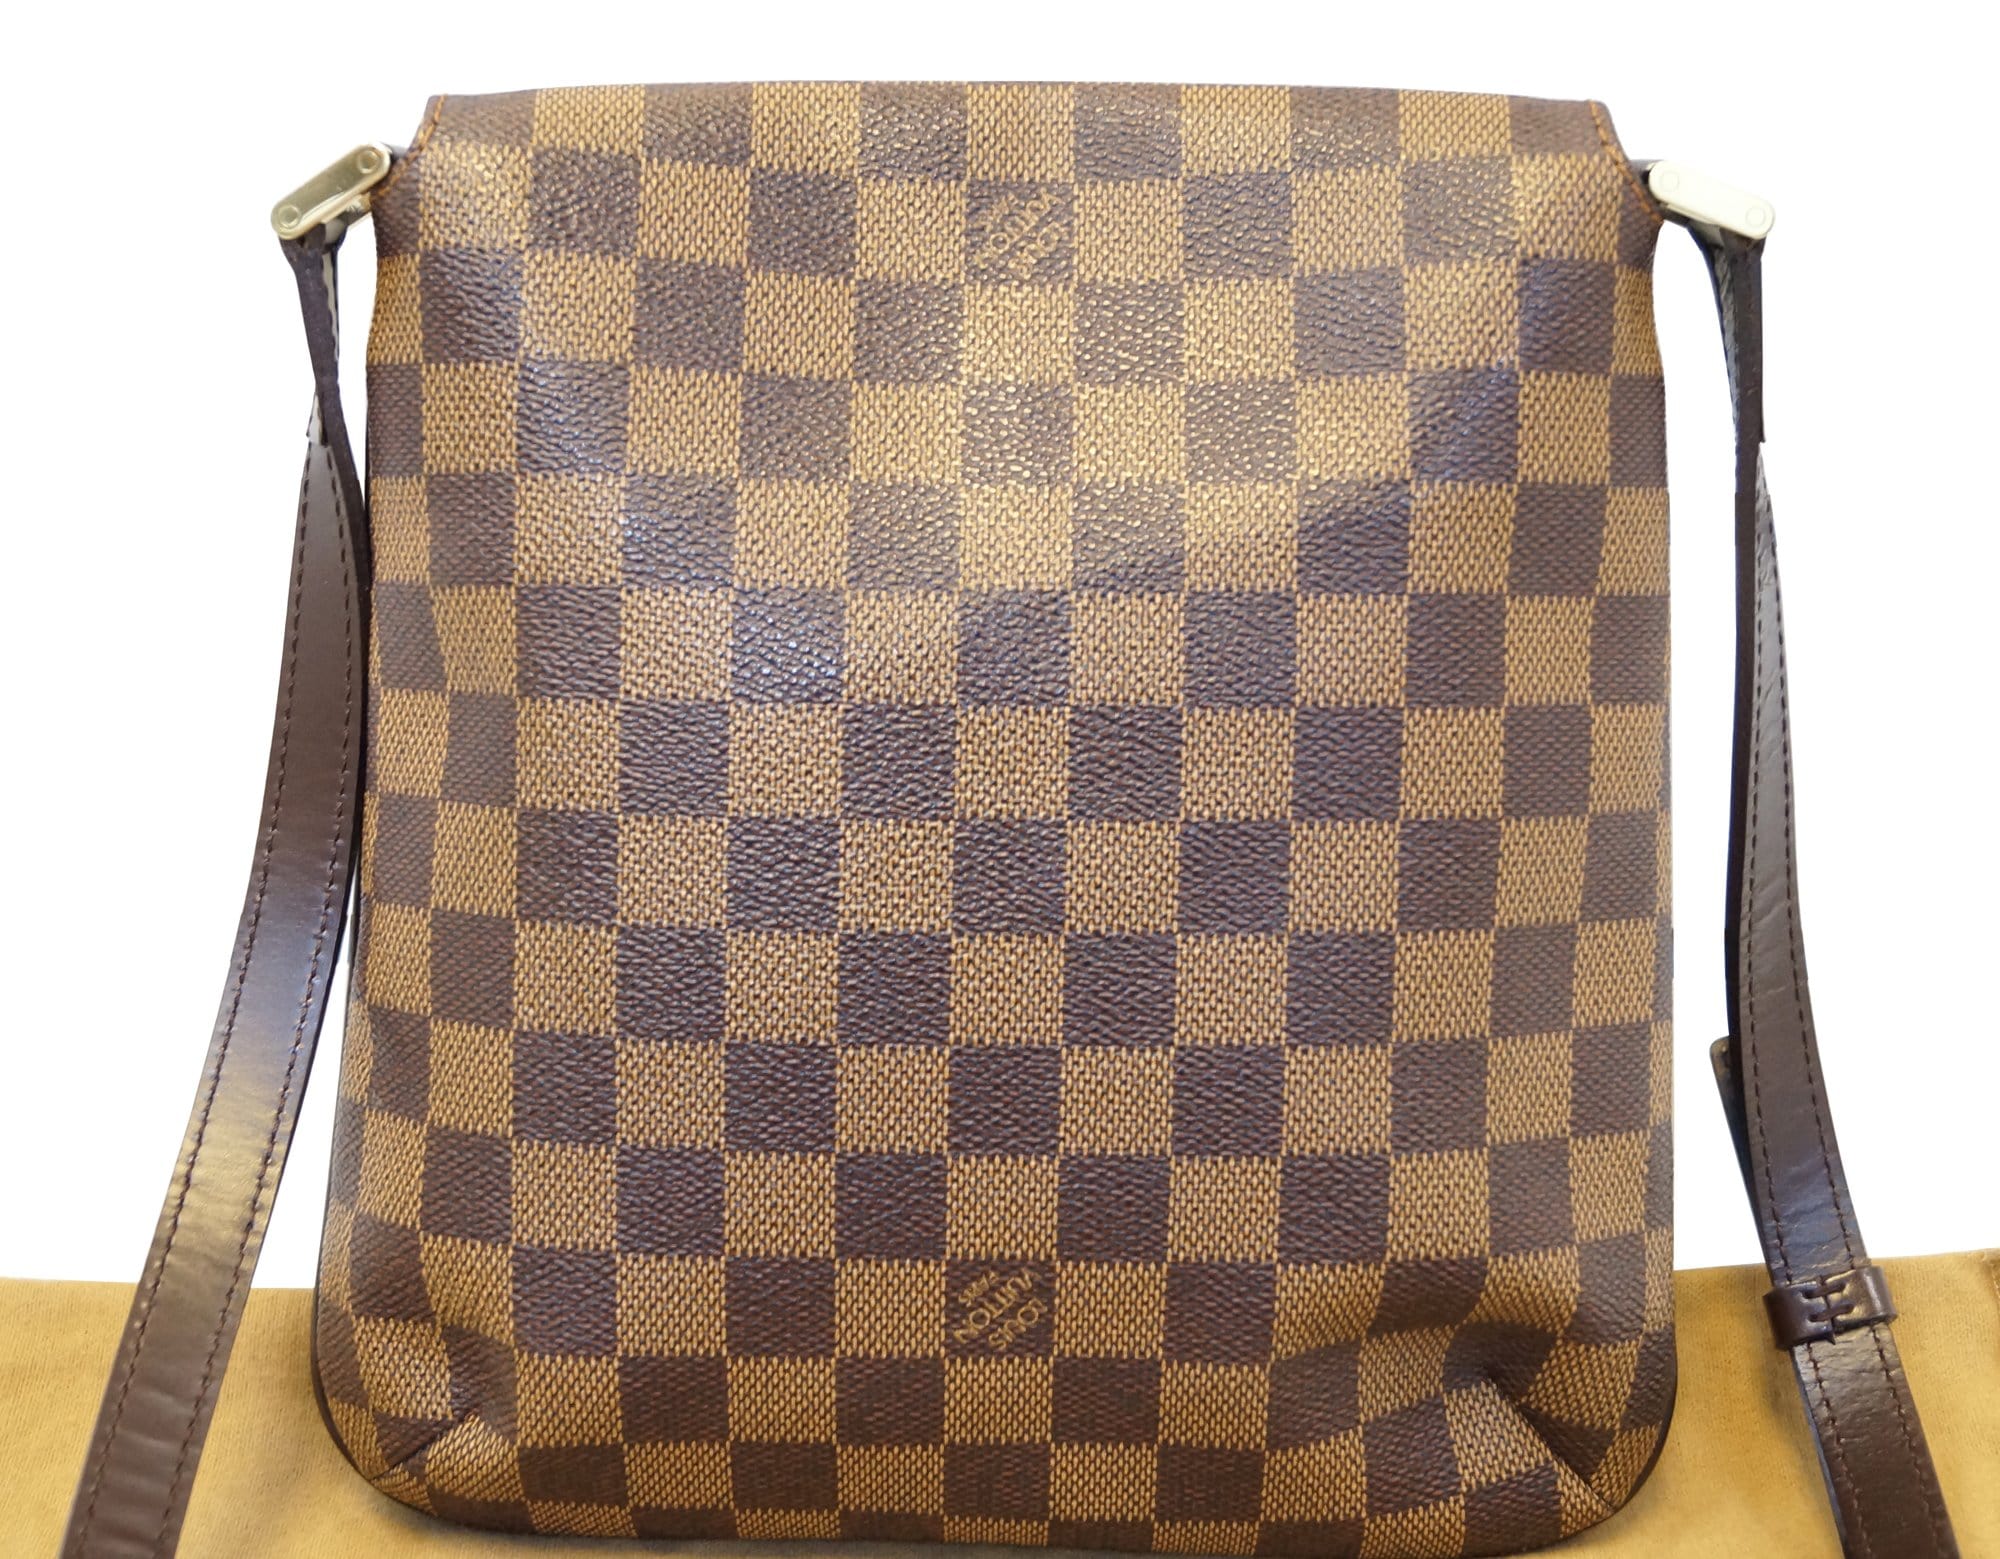 Louis Vuitton Musette Crossbody Messenger Bag